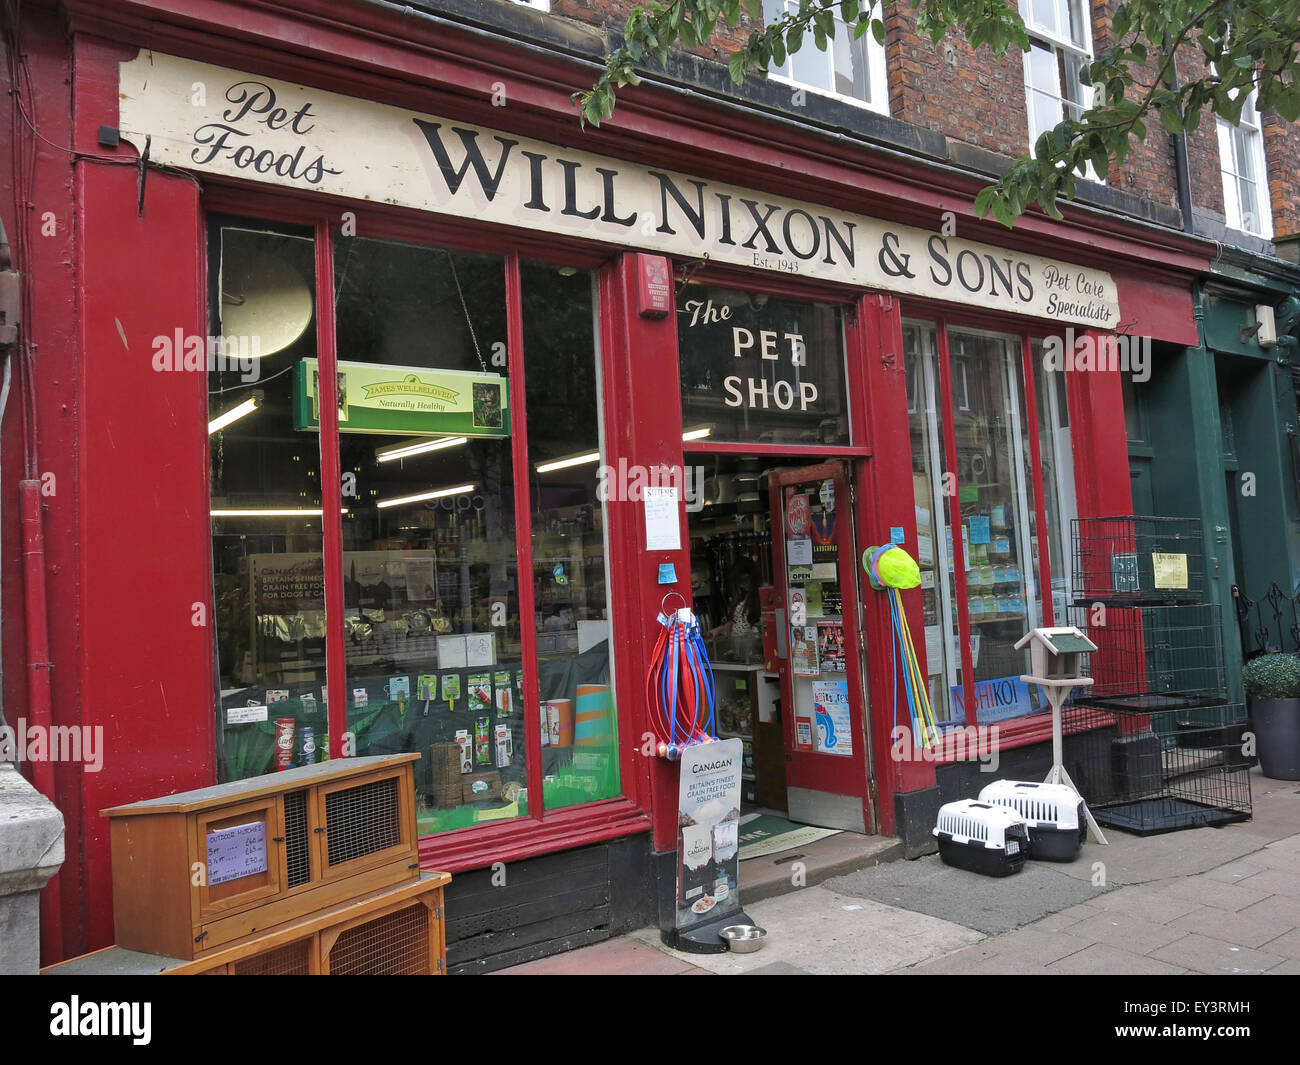 Nixon va et fils,Carlisle traditionnels pet shop,Cumbria, Angleterre, Royaume-Uni Banque D'Images